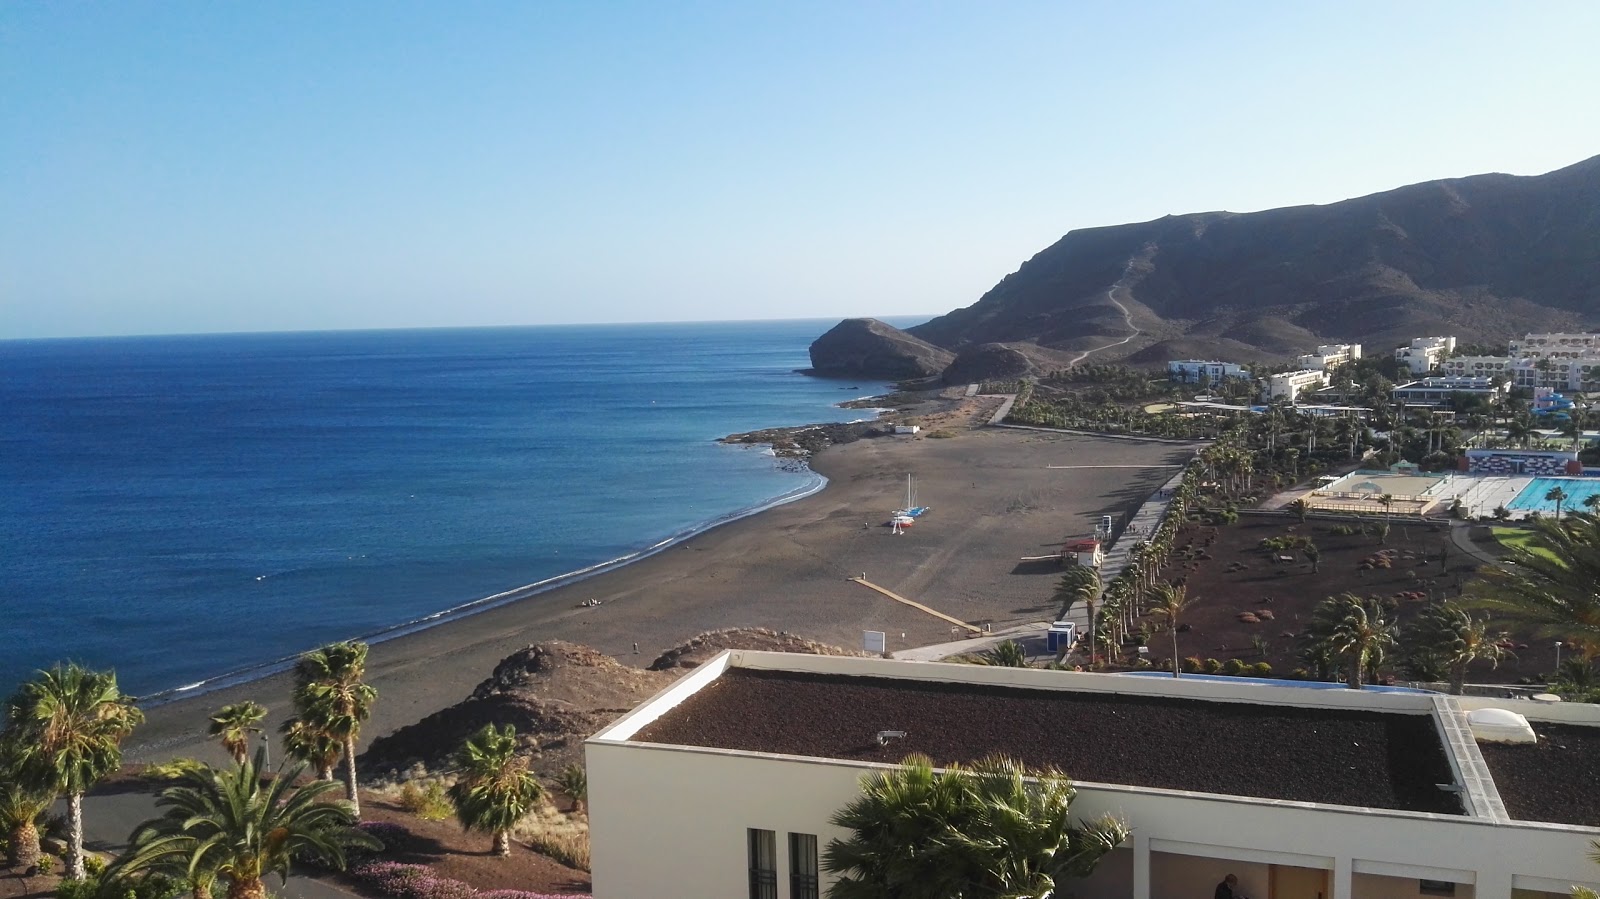 Foto af Playa de los Pobres med grå sand overflade